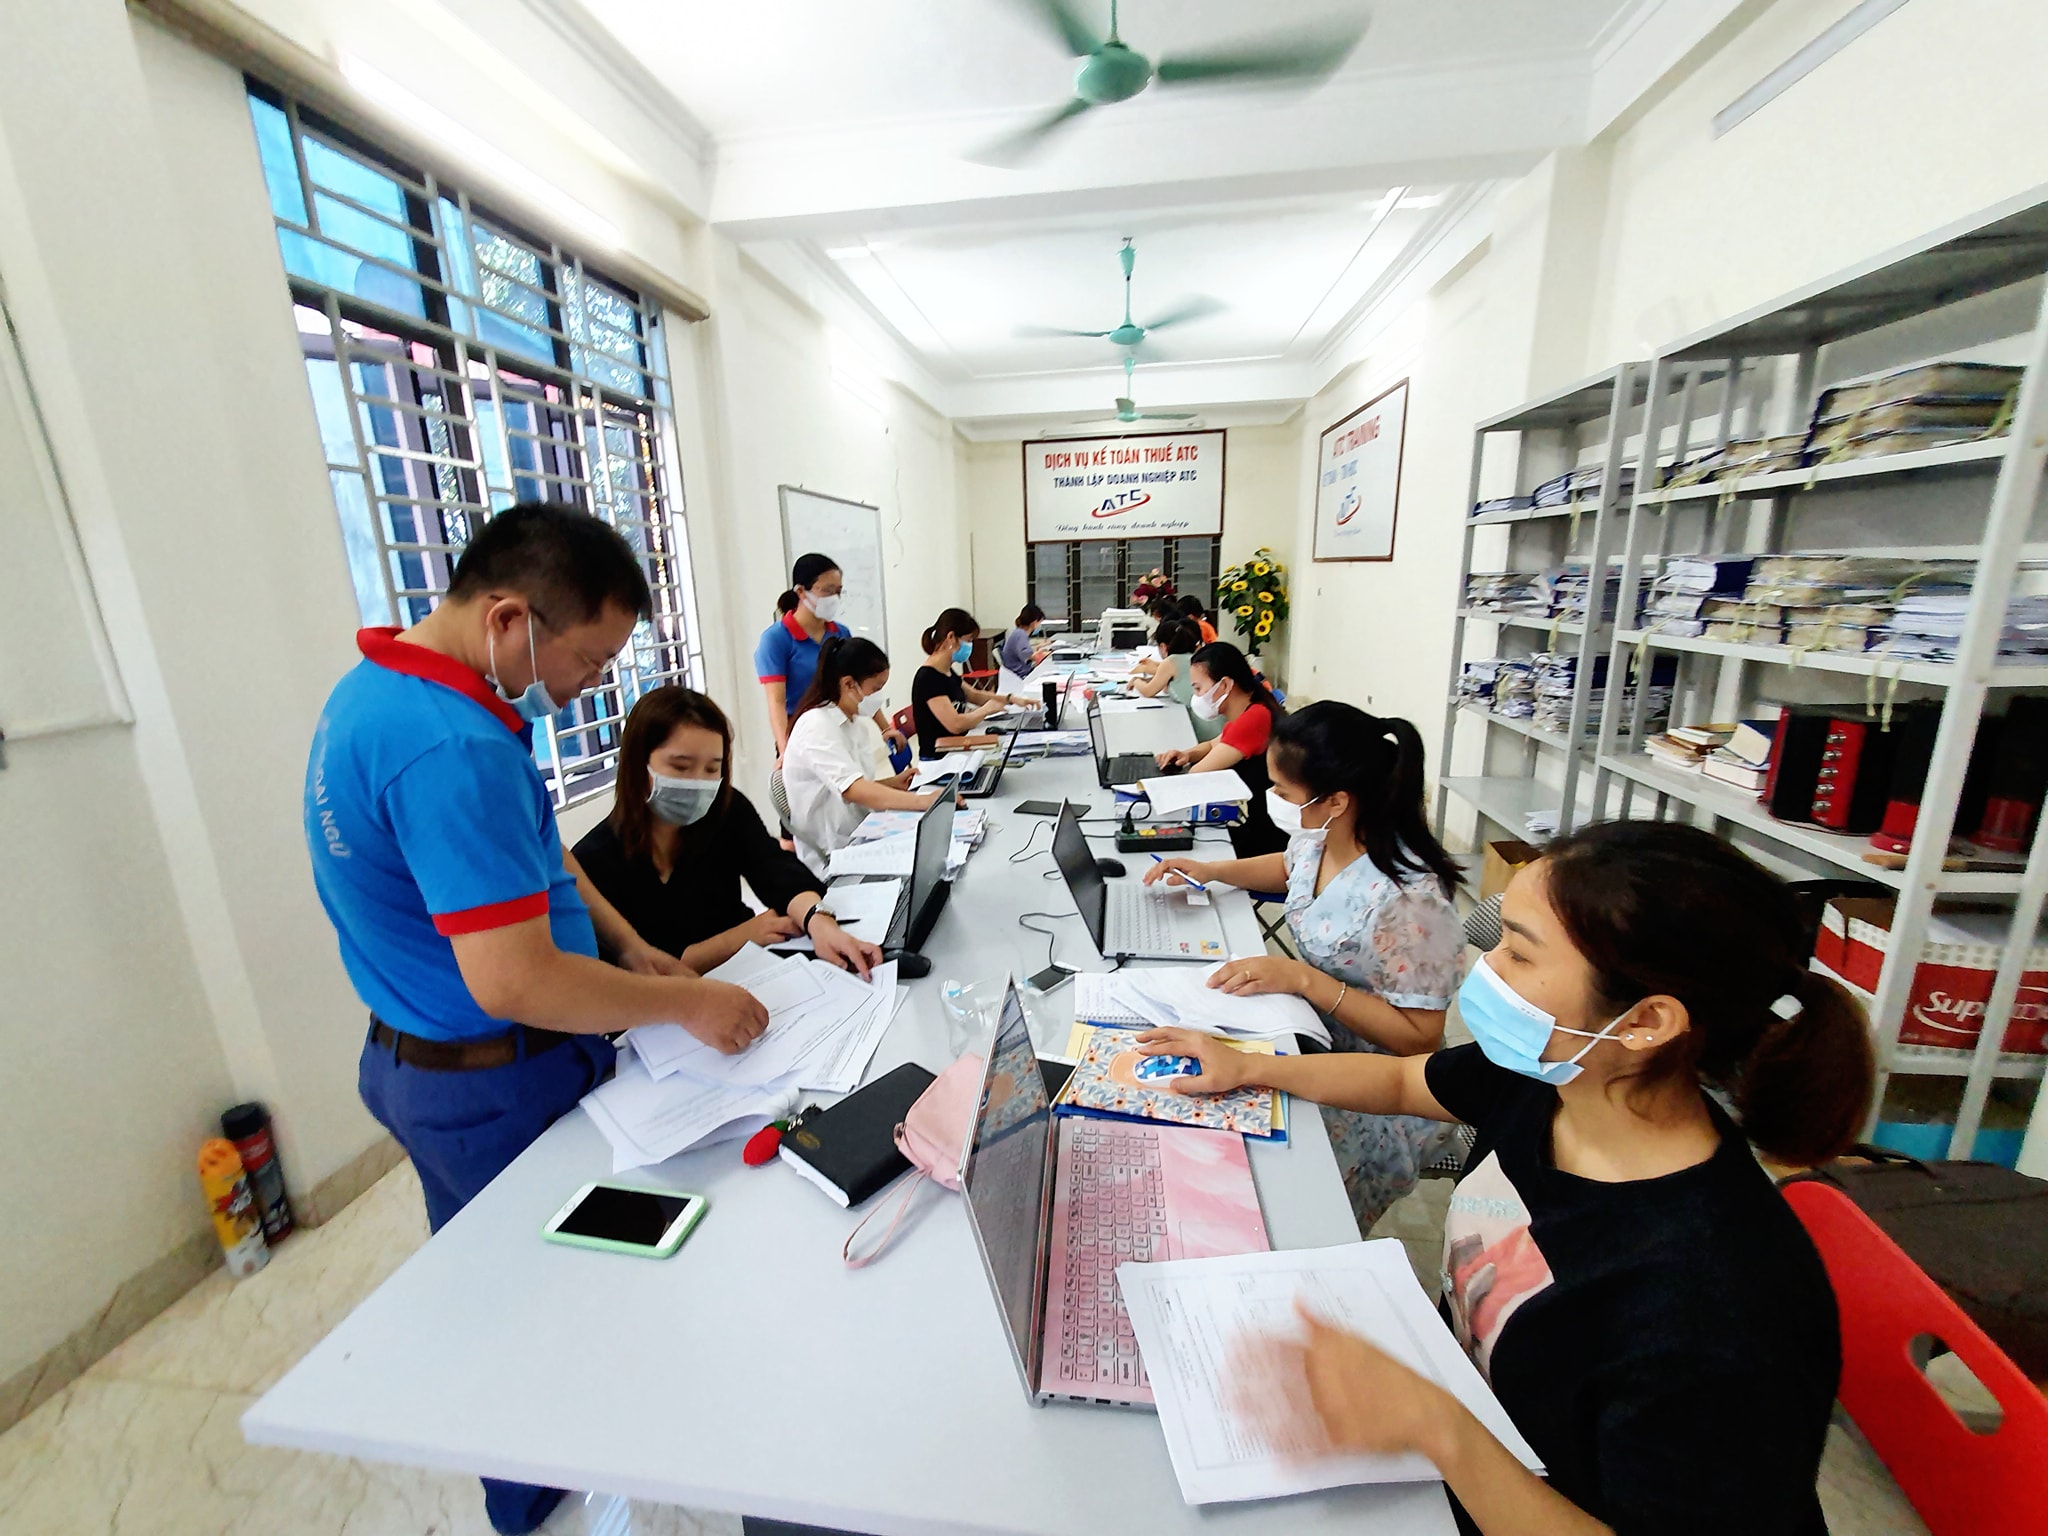 Dịch vụ báo cáo tài chính tại Thanh Hóa